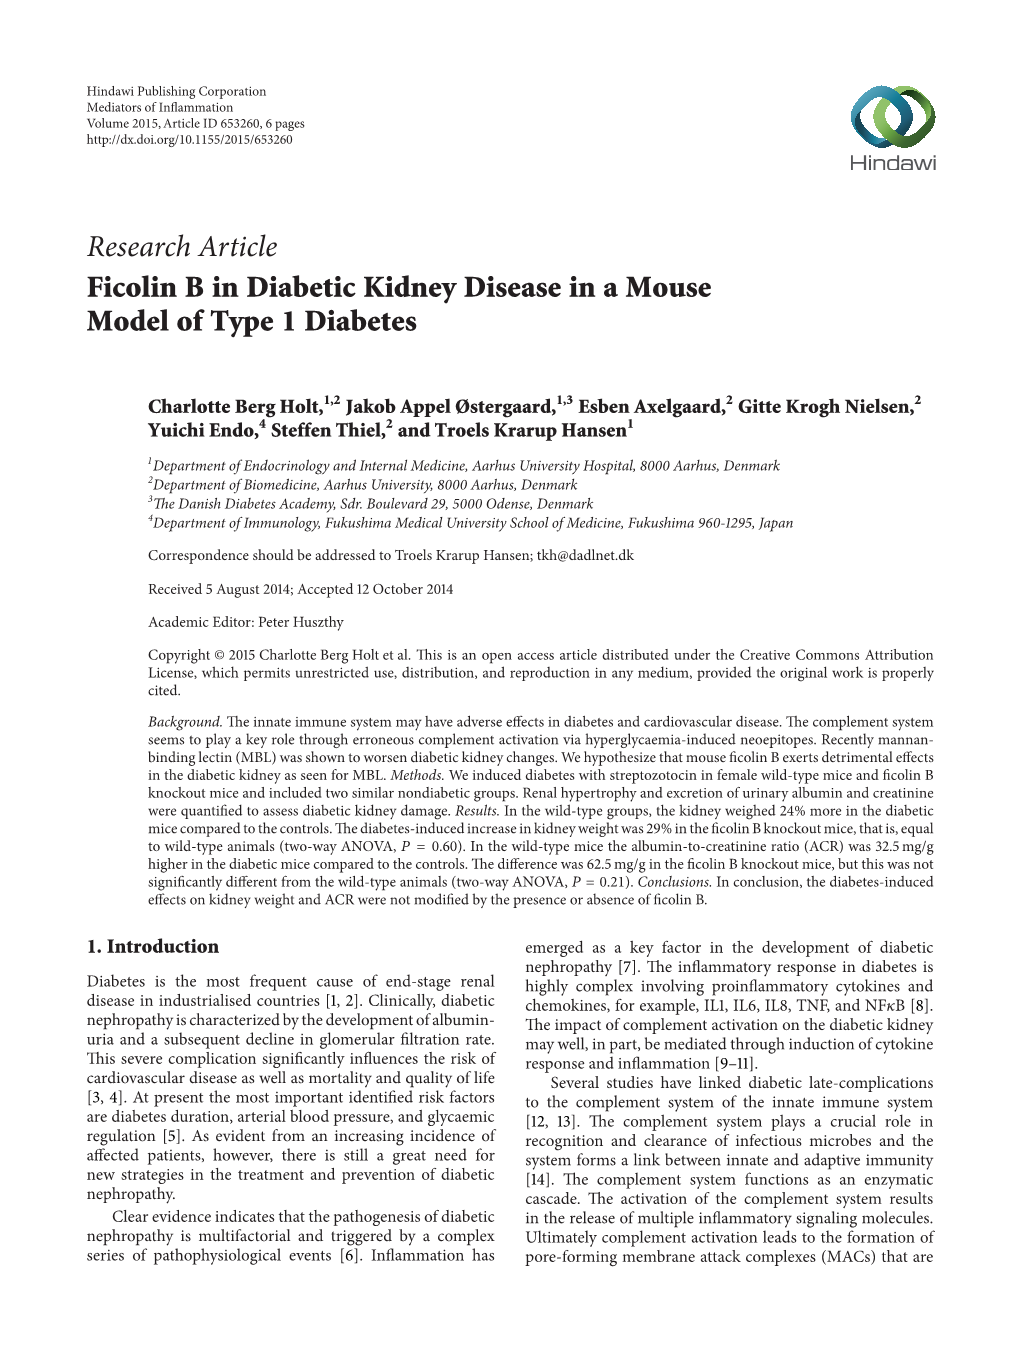 Ficolin B in Diabetic Kidney Disease in a Mouse Model of Type 1 Diabetes